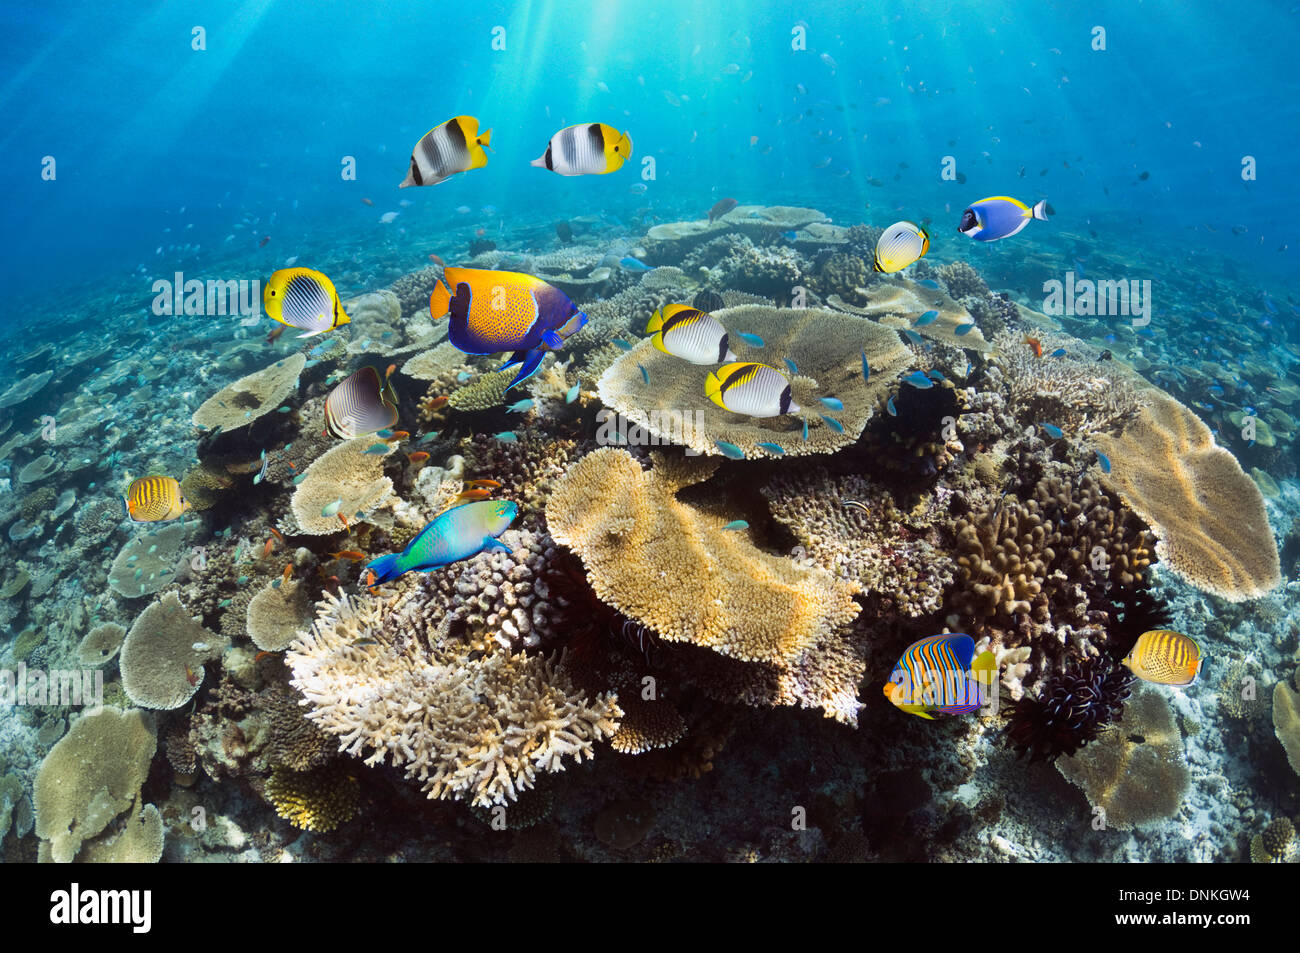 Arrecifes de coral con mesa de corales (Acropora sp.) y peces tropicales. Maldivas. Foto de stock